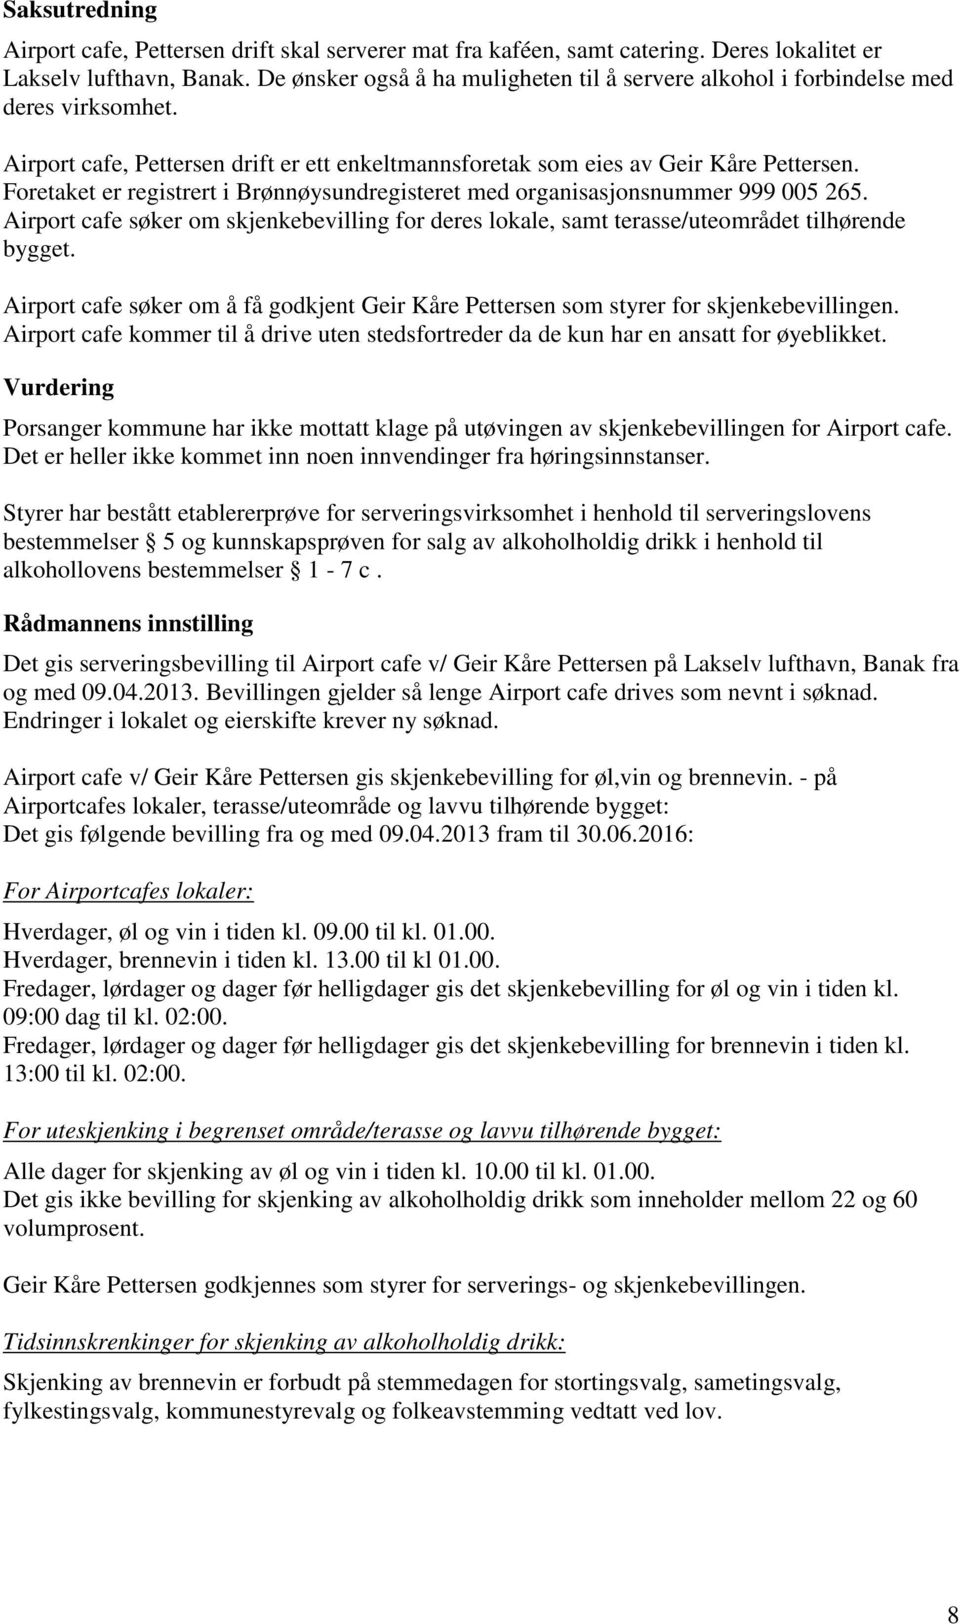 Foretaket er registrert i Brønnøysundregisteret med organisasjonsnummer 999 005 265. Airport cafe søker om skjenkebevilling for deres lokale, samt terasse/uteområdet tilhørende bygget.